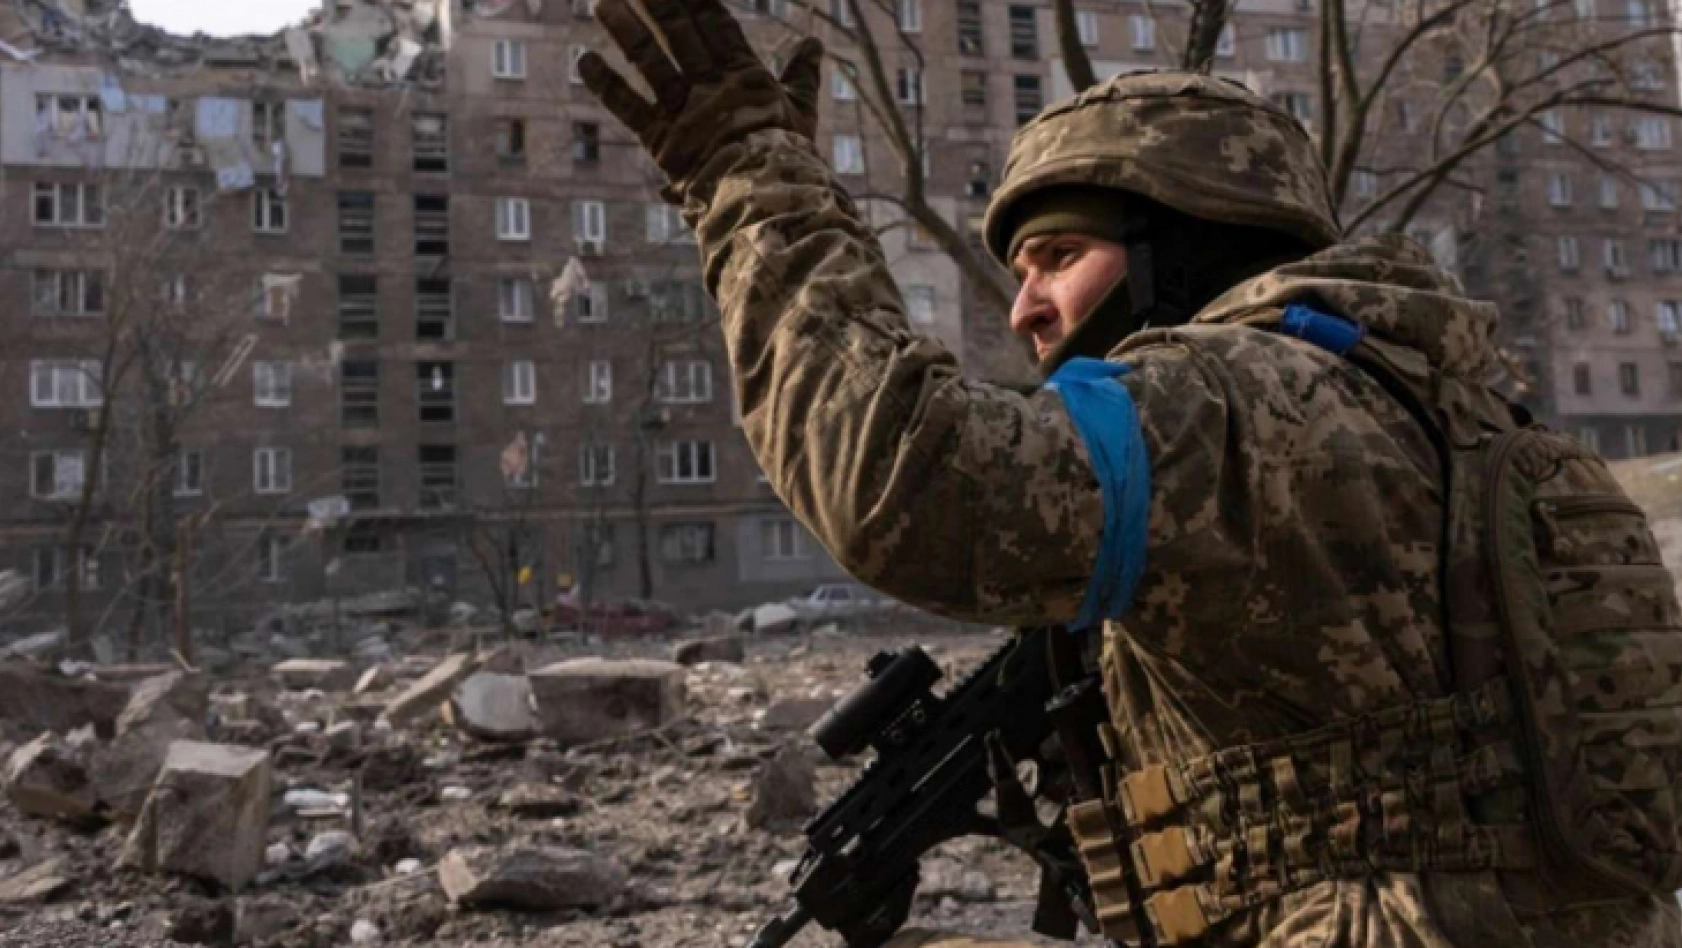 Donetsk halkının zorunlu tahliyesi istendi